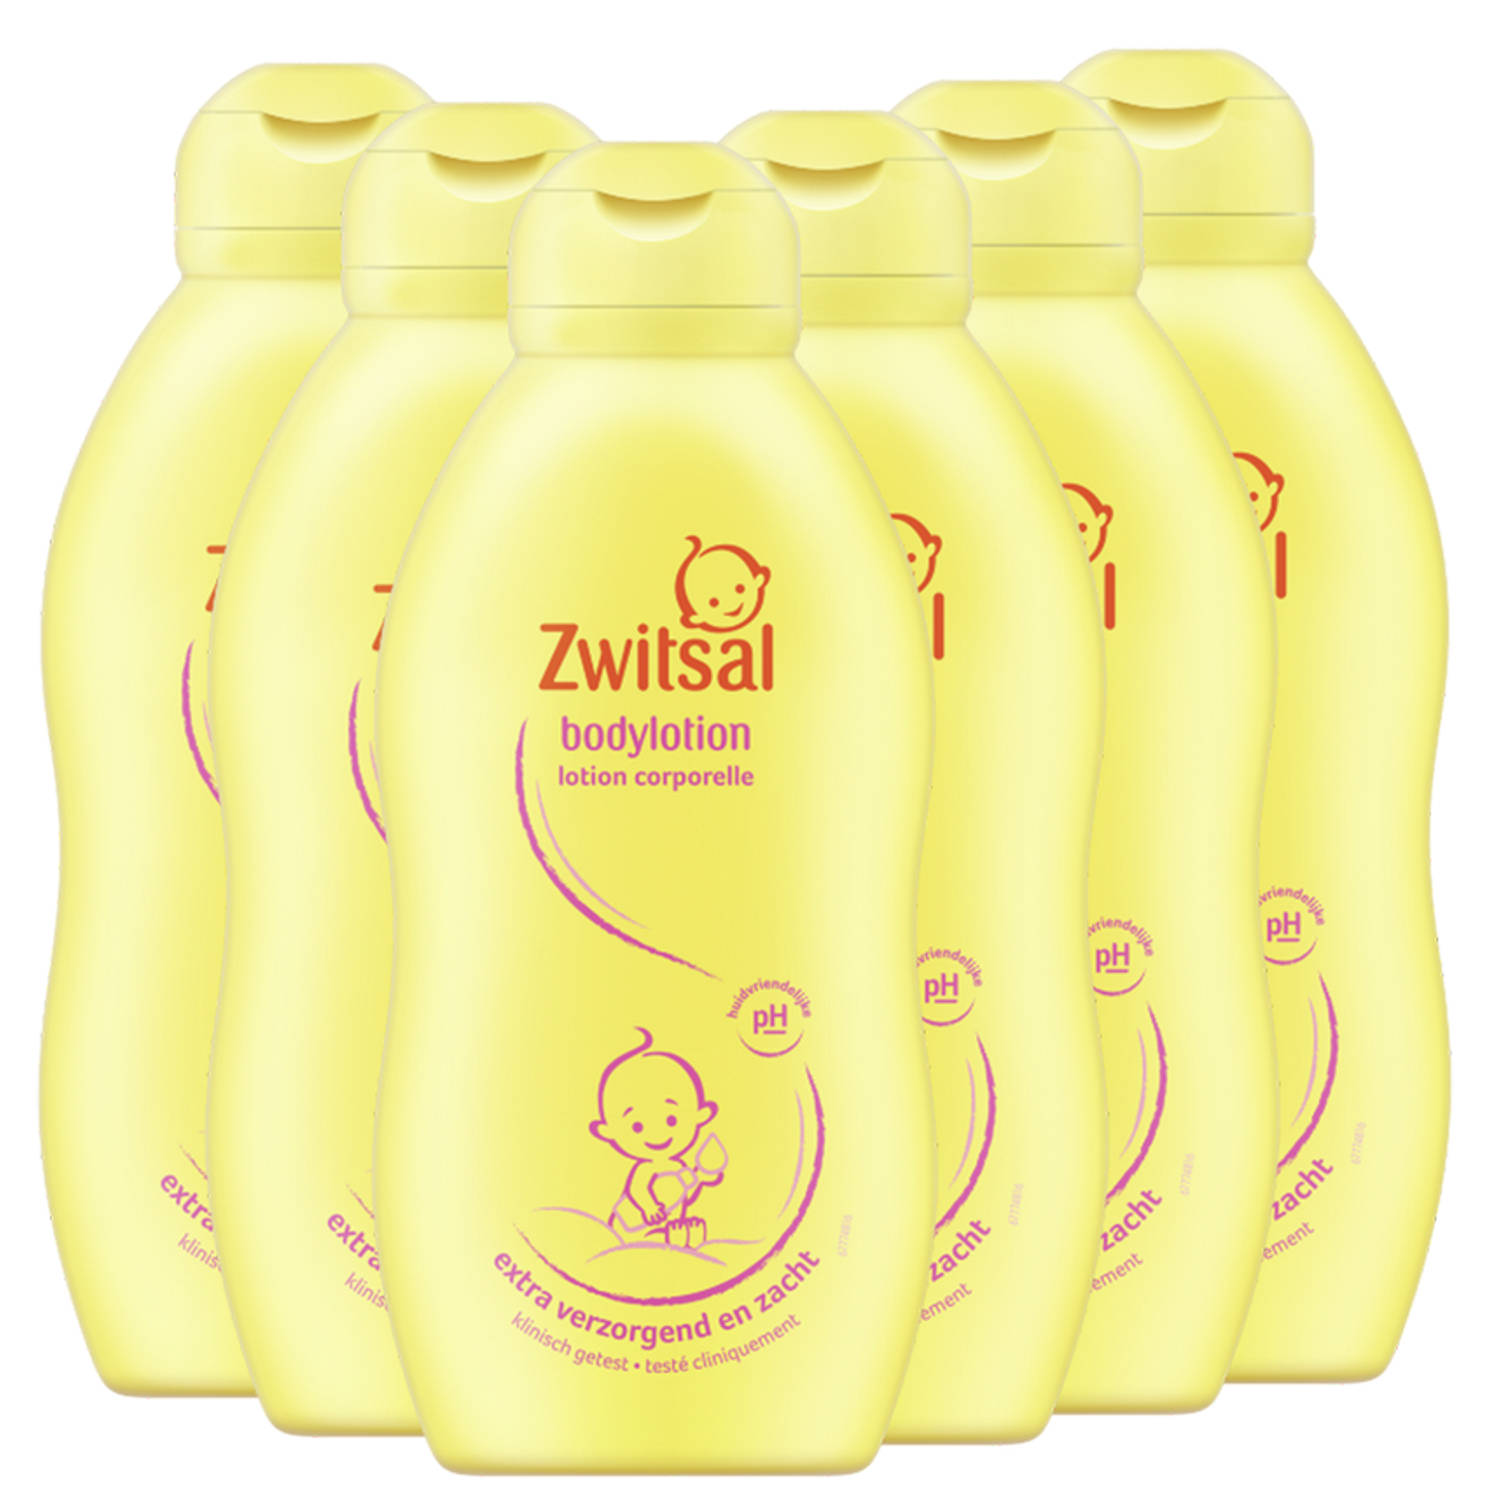 Zwitsal Baby - Bodylotion - 6 x 200ml - 6-Pack Voordeelverpakking